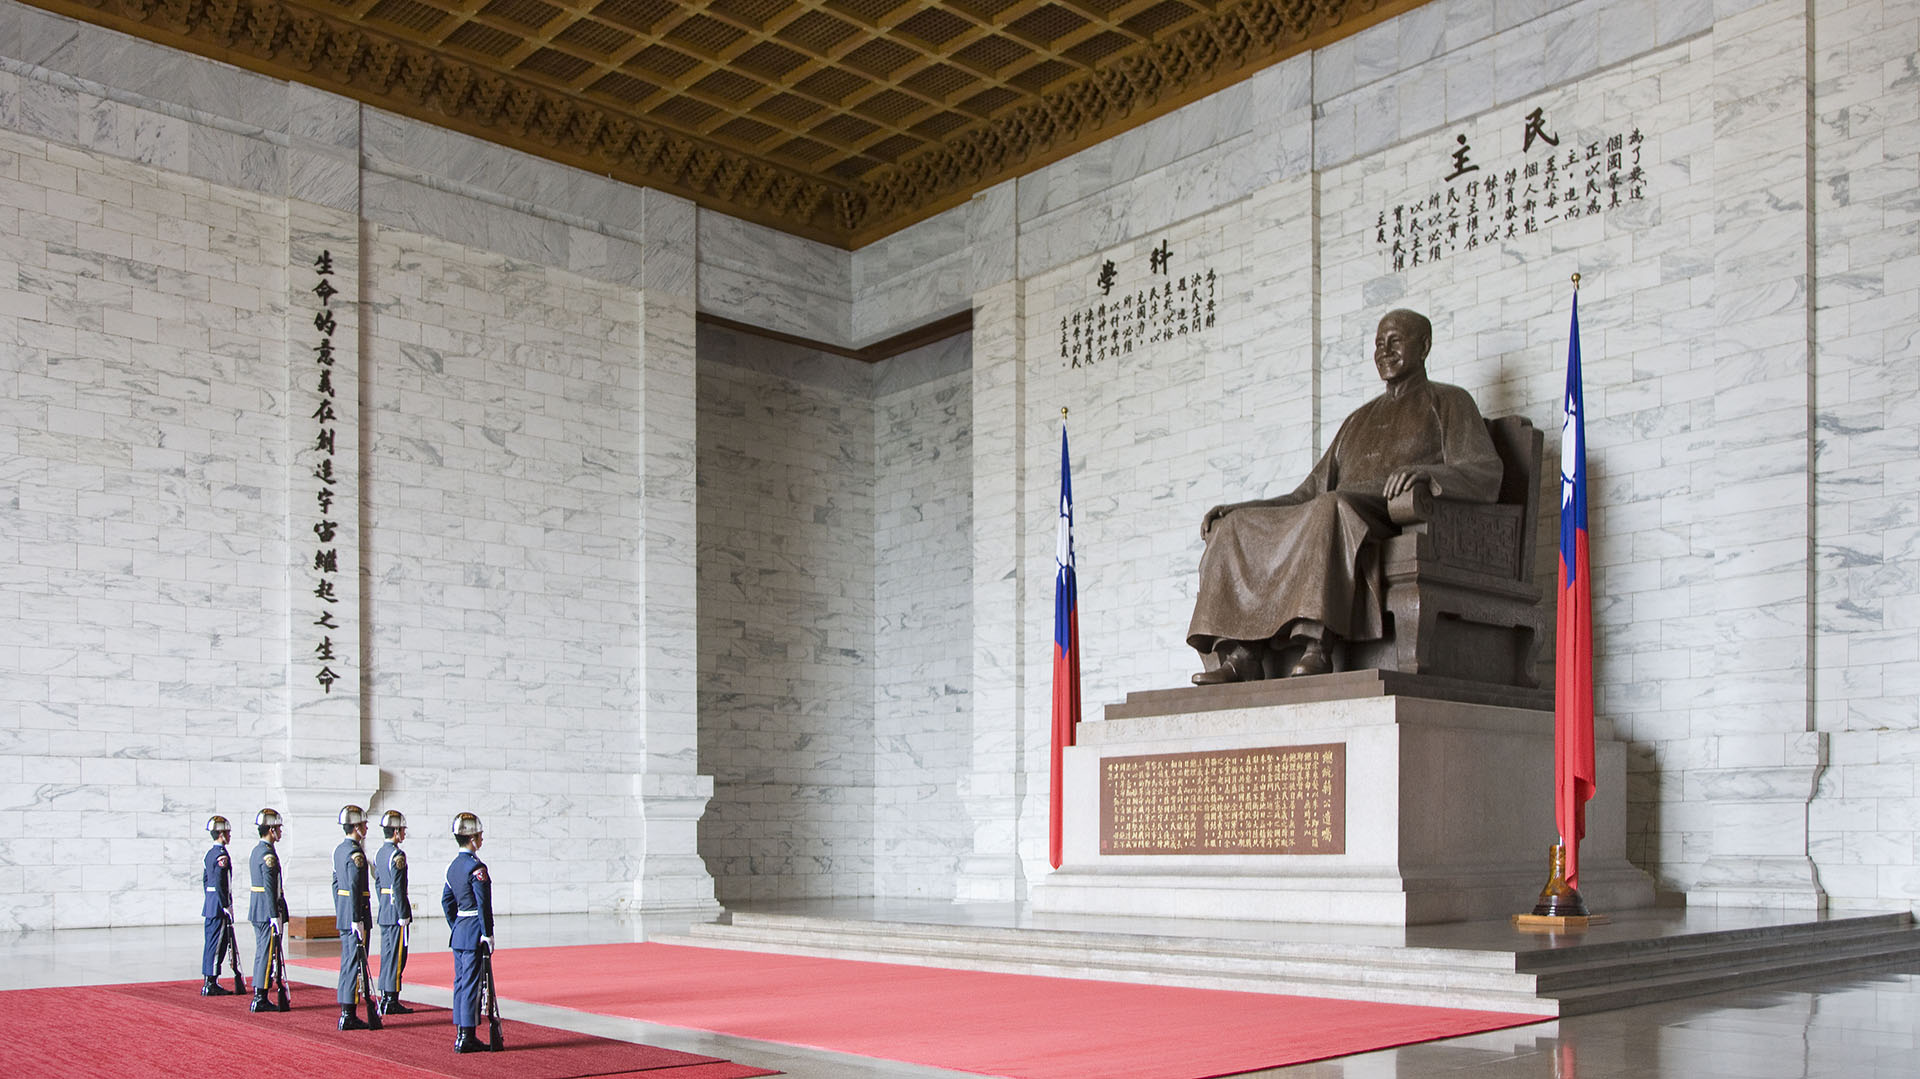 Cambio de guardia en el Memorial de Chiang Kai-Shek en Taipei. La estatua del fundador del estado será retirada próximamente por representar el autoritarismo (Getty Images)